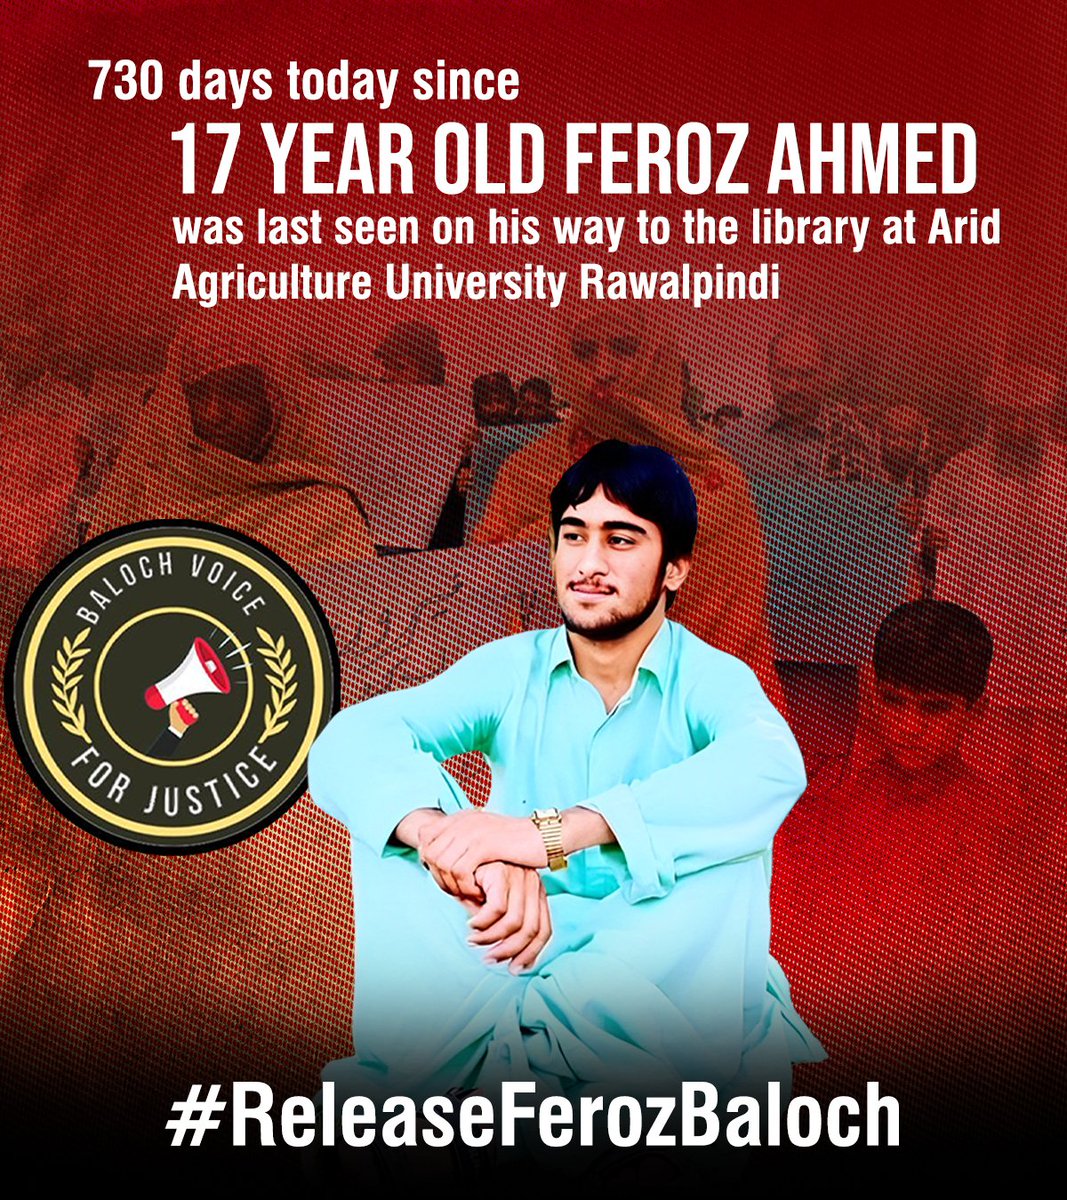 فیروز بلوچ کی بازیابی کے لئے آواز اٹھائیں۔
#ReleaseFerozBaloch 
#ReleaseAhmedKhan 
#SaveBalochStudents